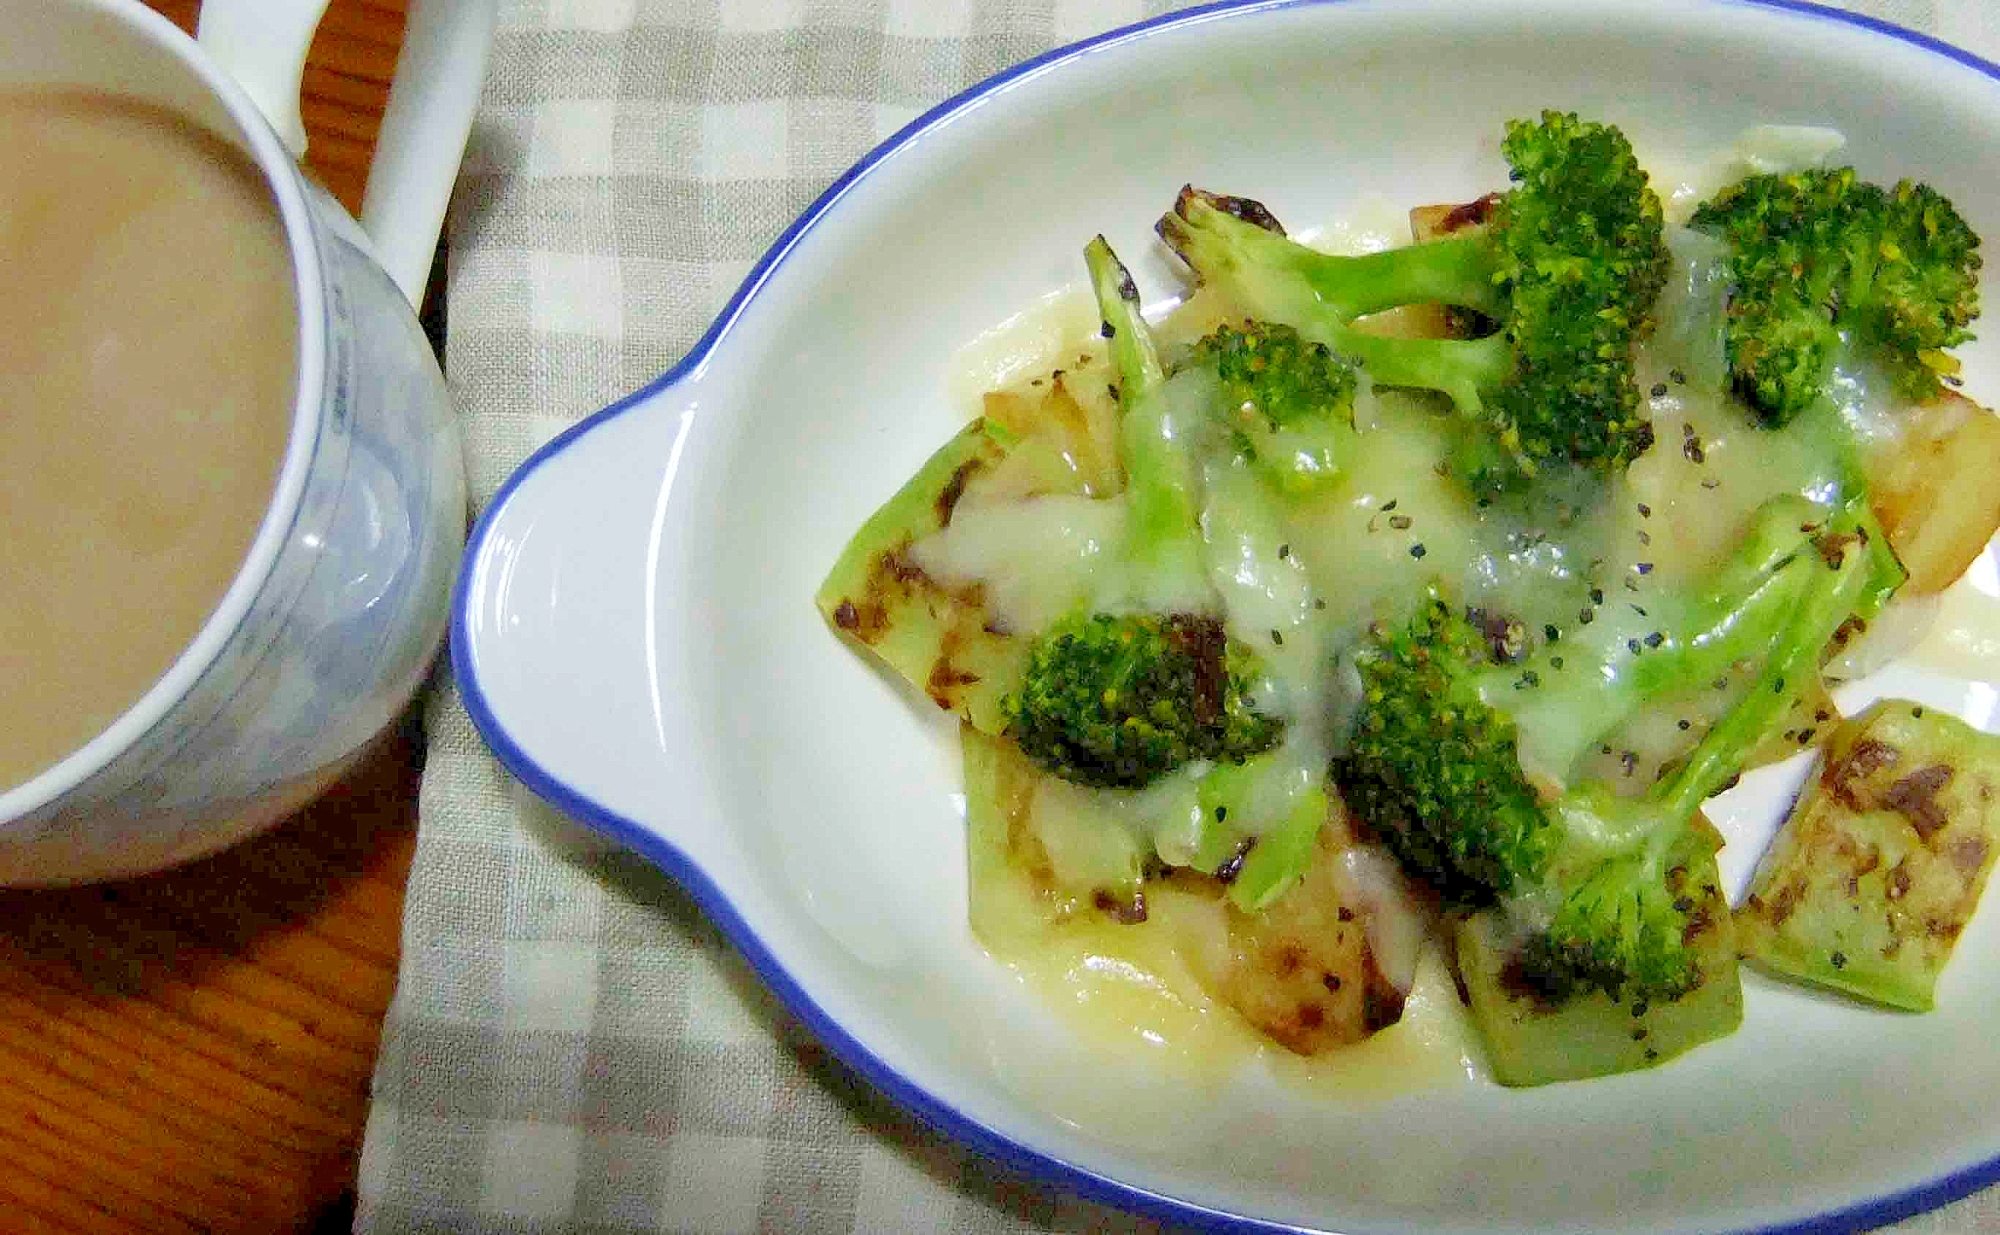 ブロッコリーの葉と茎のチーズ焼き レシピ 作り方 By ｃａｃｈｅｃａｃｈｅ 楽天レシピ